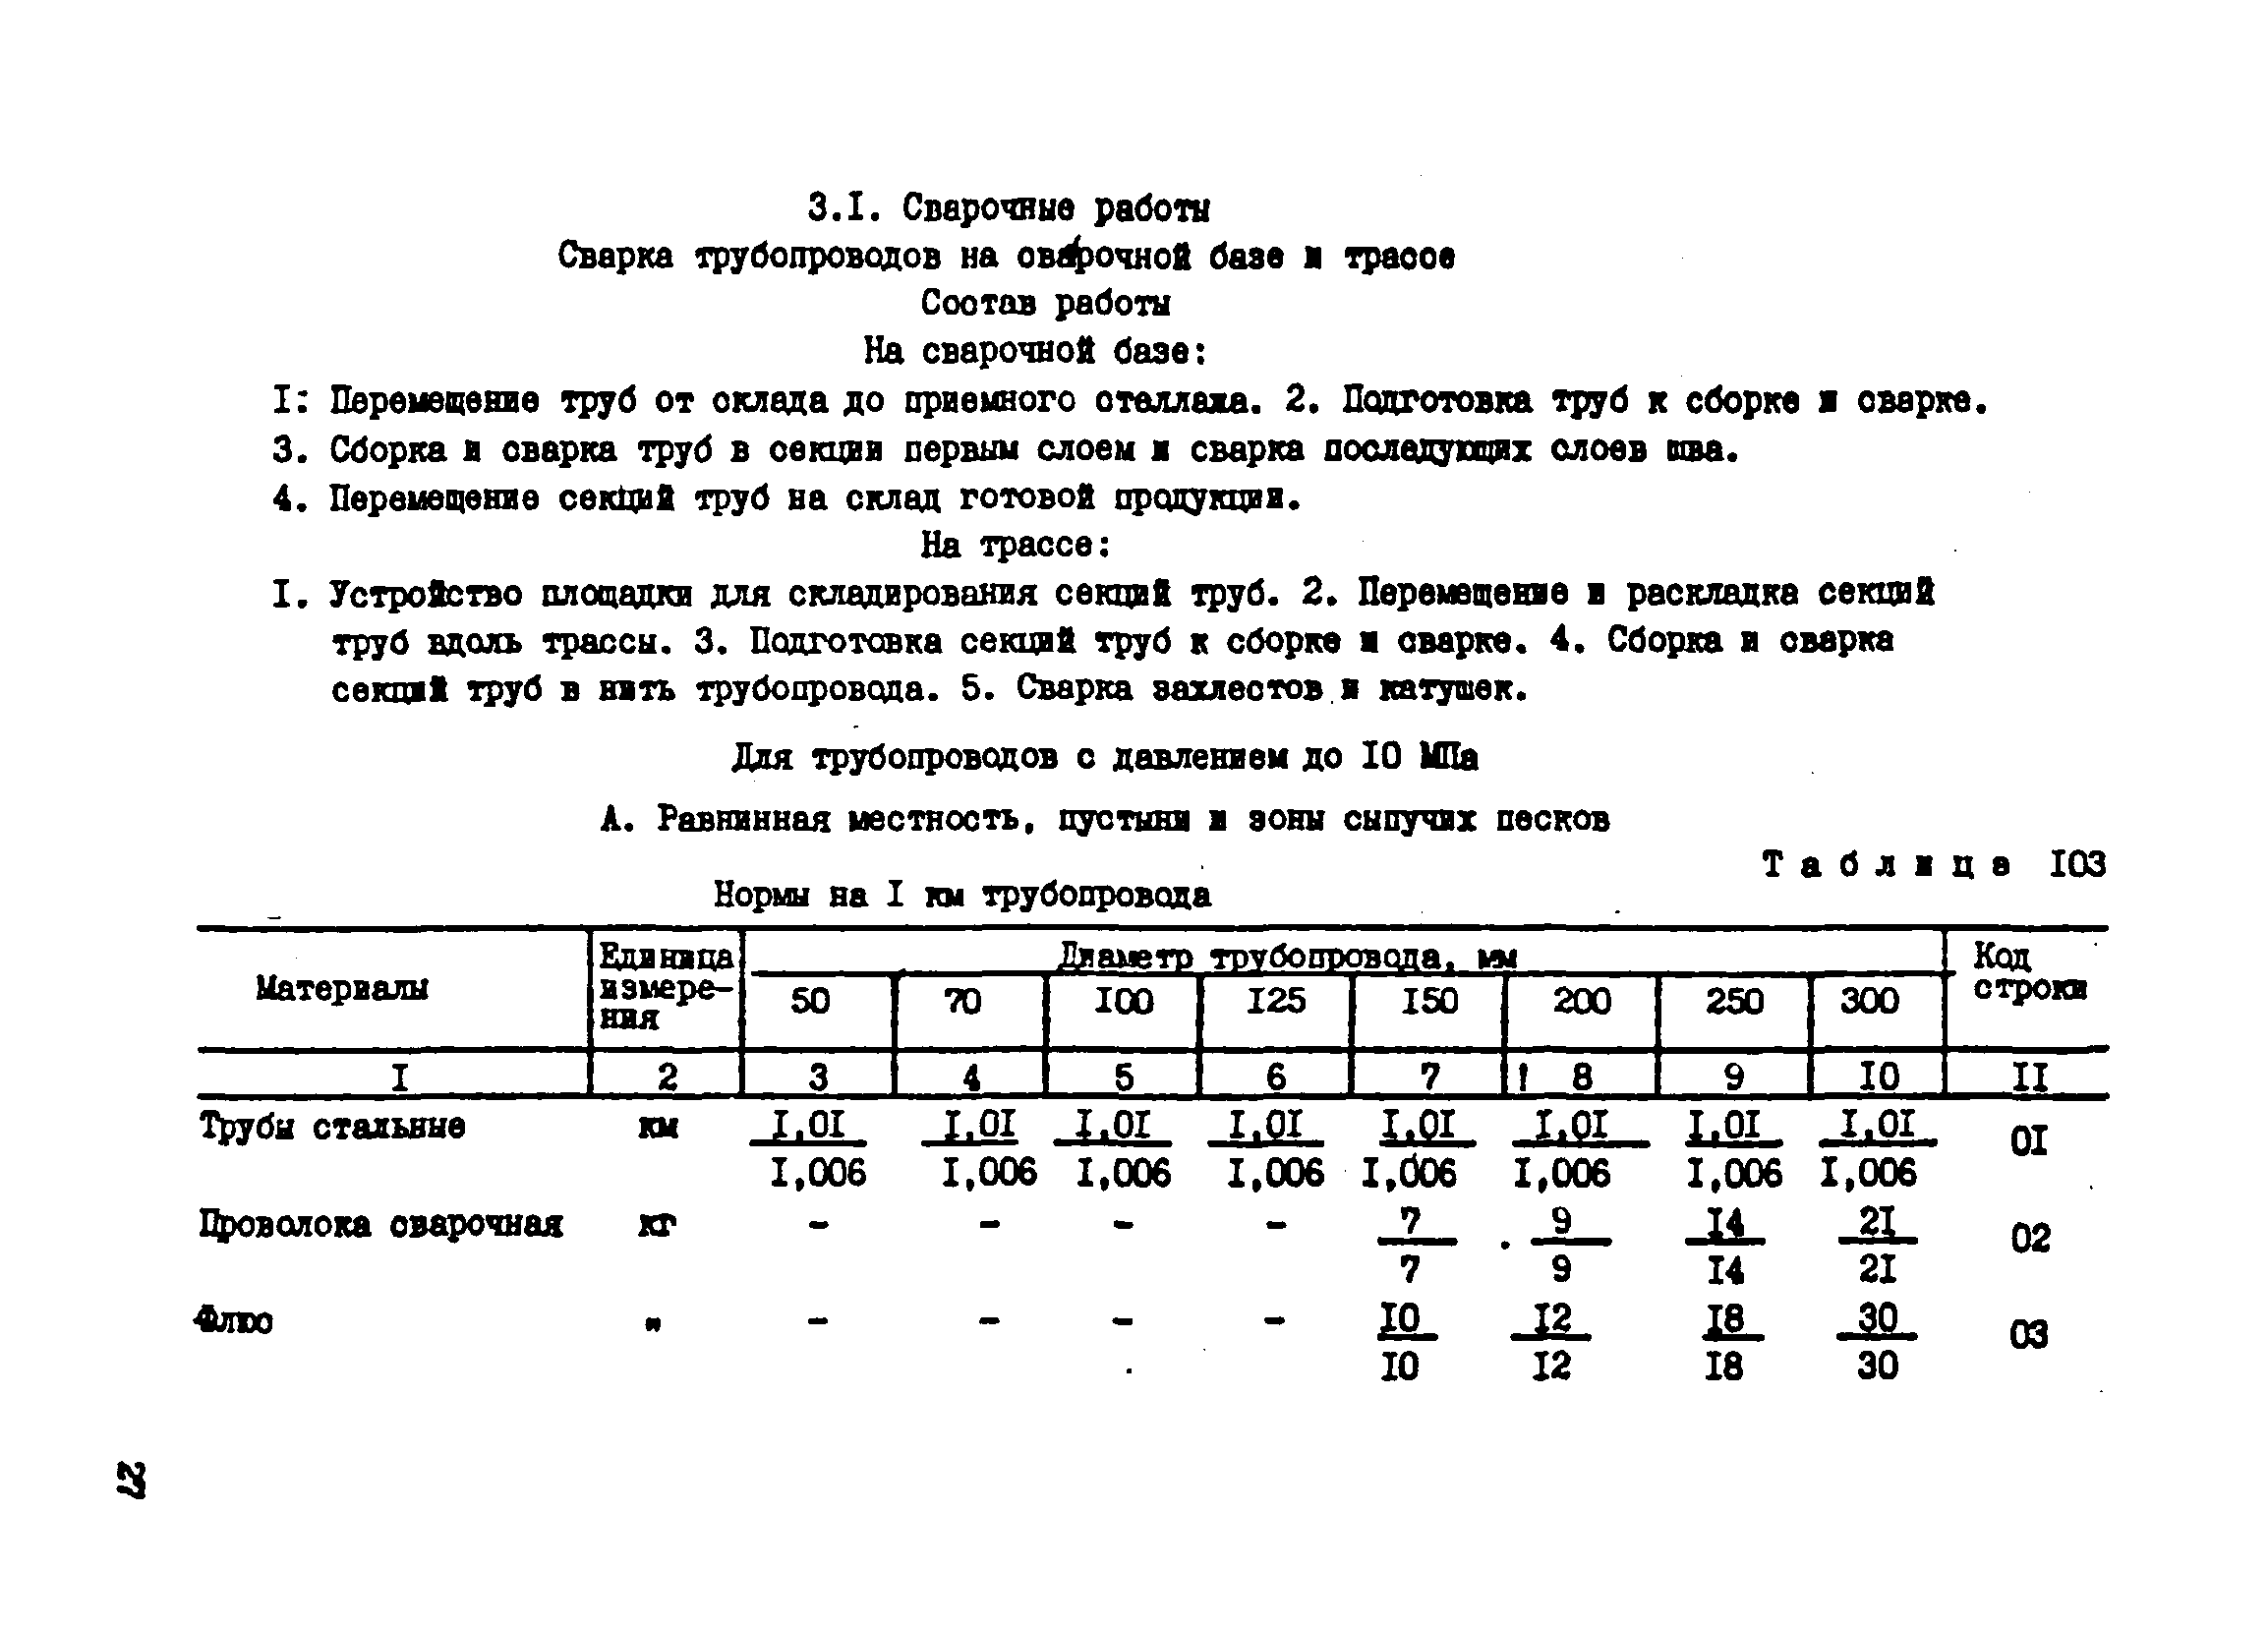 ВСН 181-85